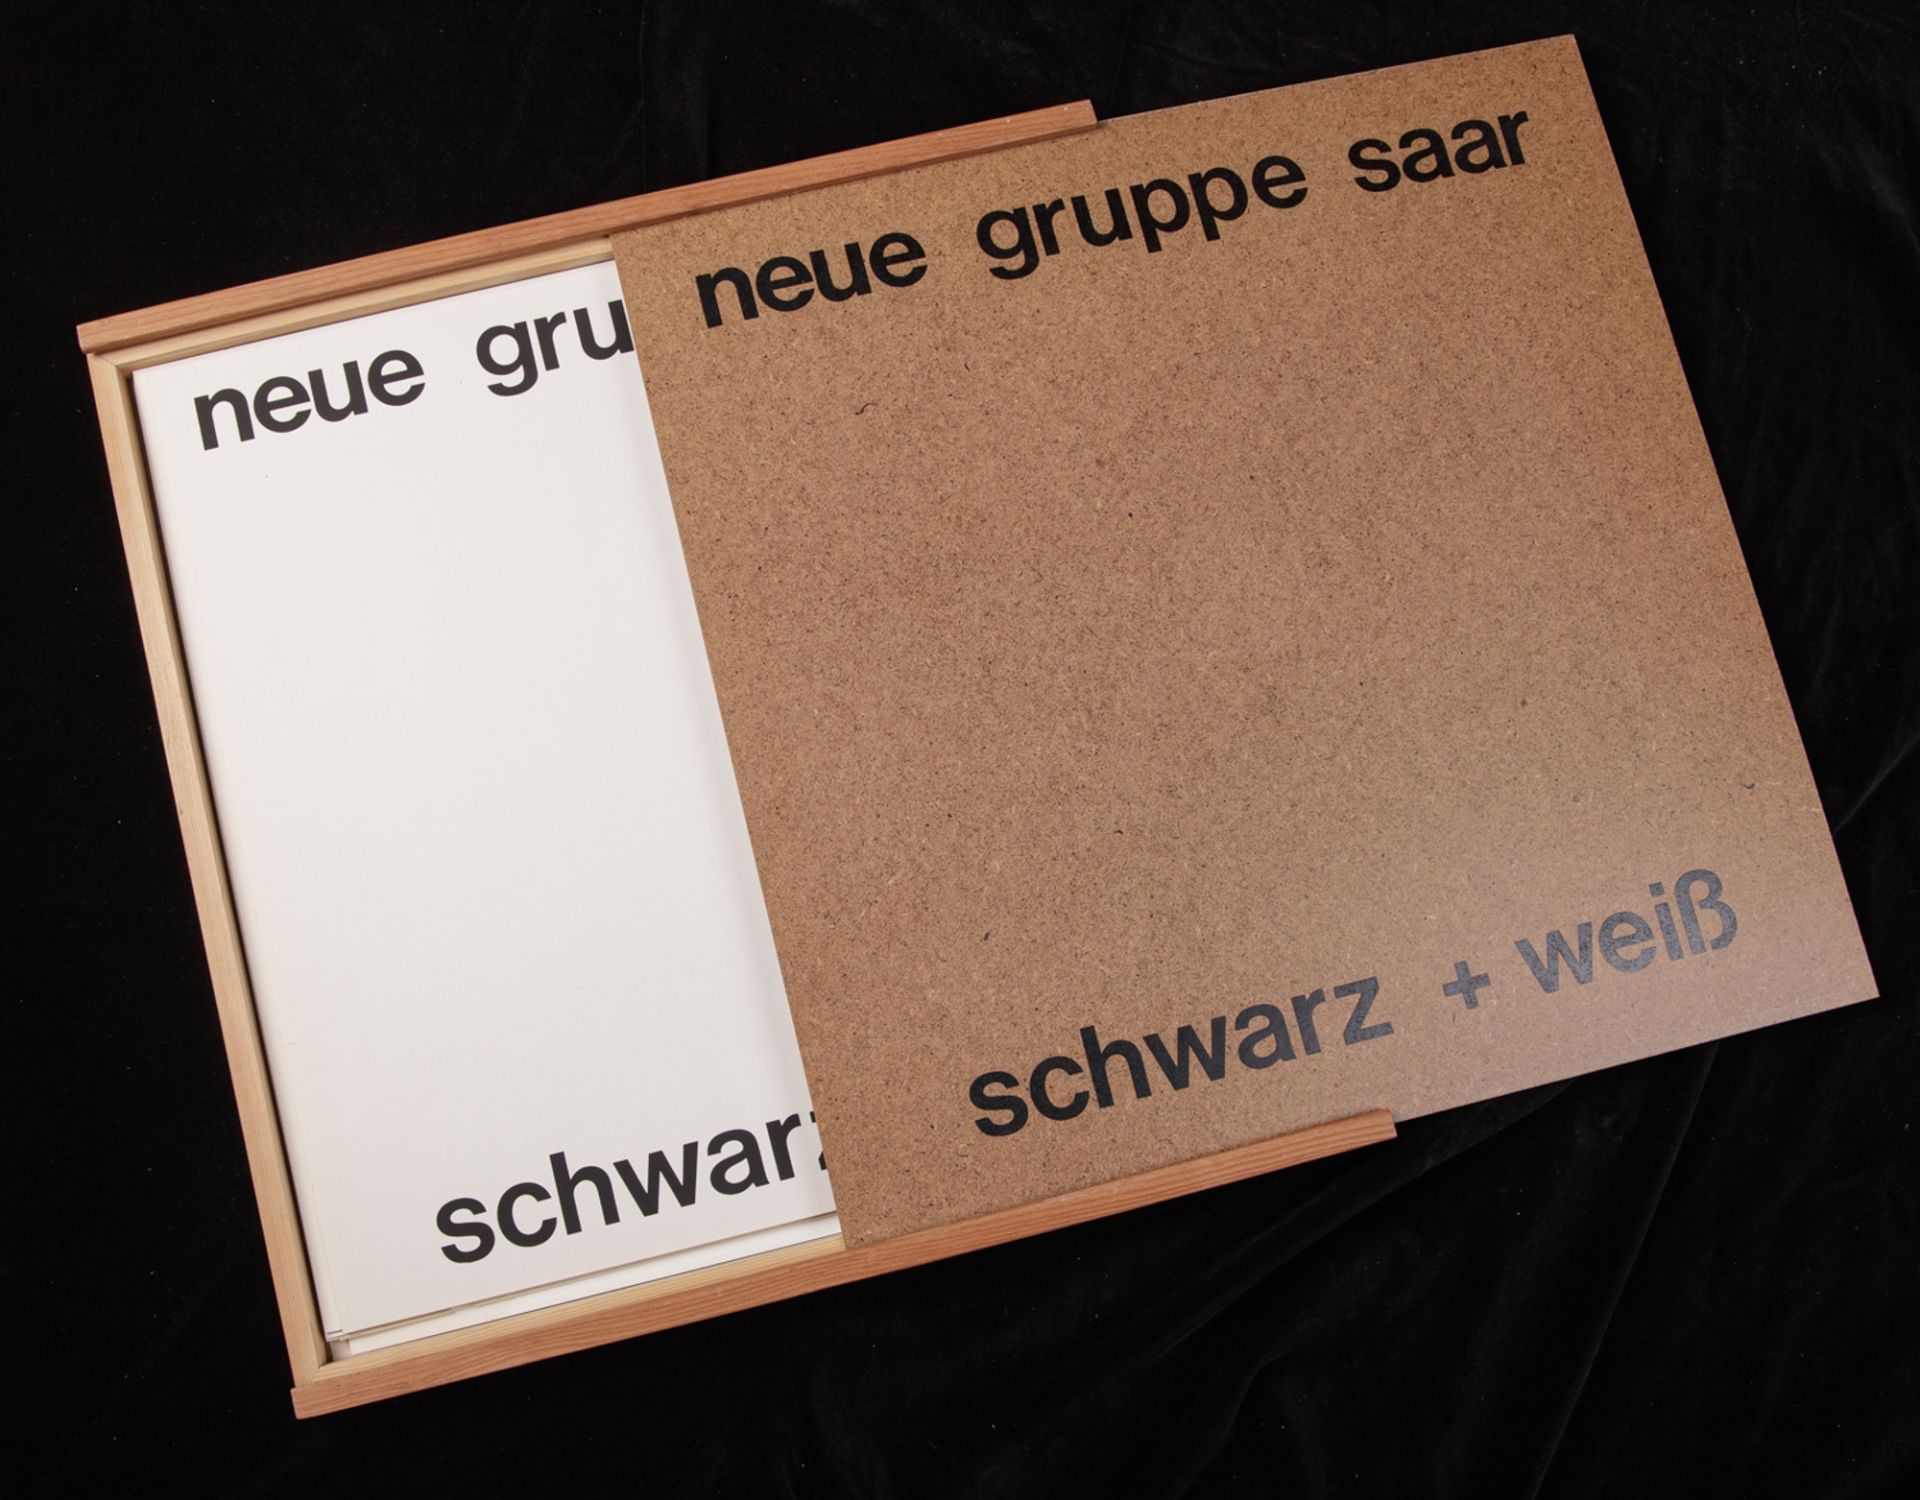 neue gruppe saar: schwarz + weiß, 1975 - Image 5 of 6